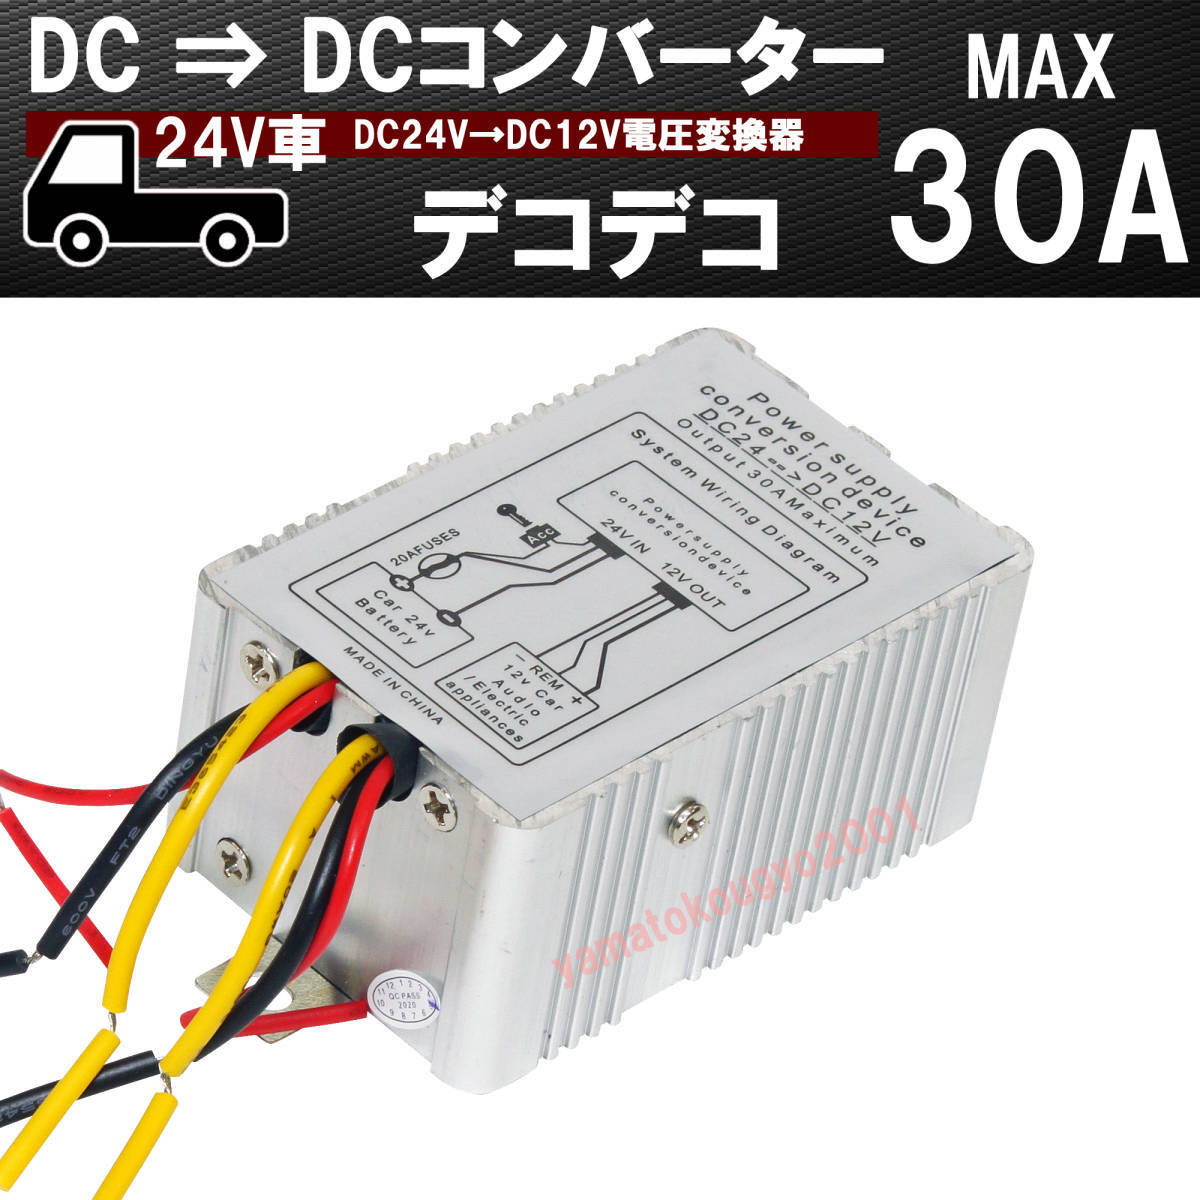 [ бесплатная доставка Kanagawa префектура из отправка ] немедленная уплата DCDC конвертер 24V-12V напряжение изменение контейнер 30A/ Decodeco трансформатор 